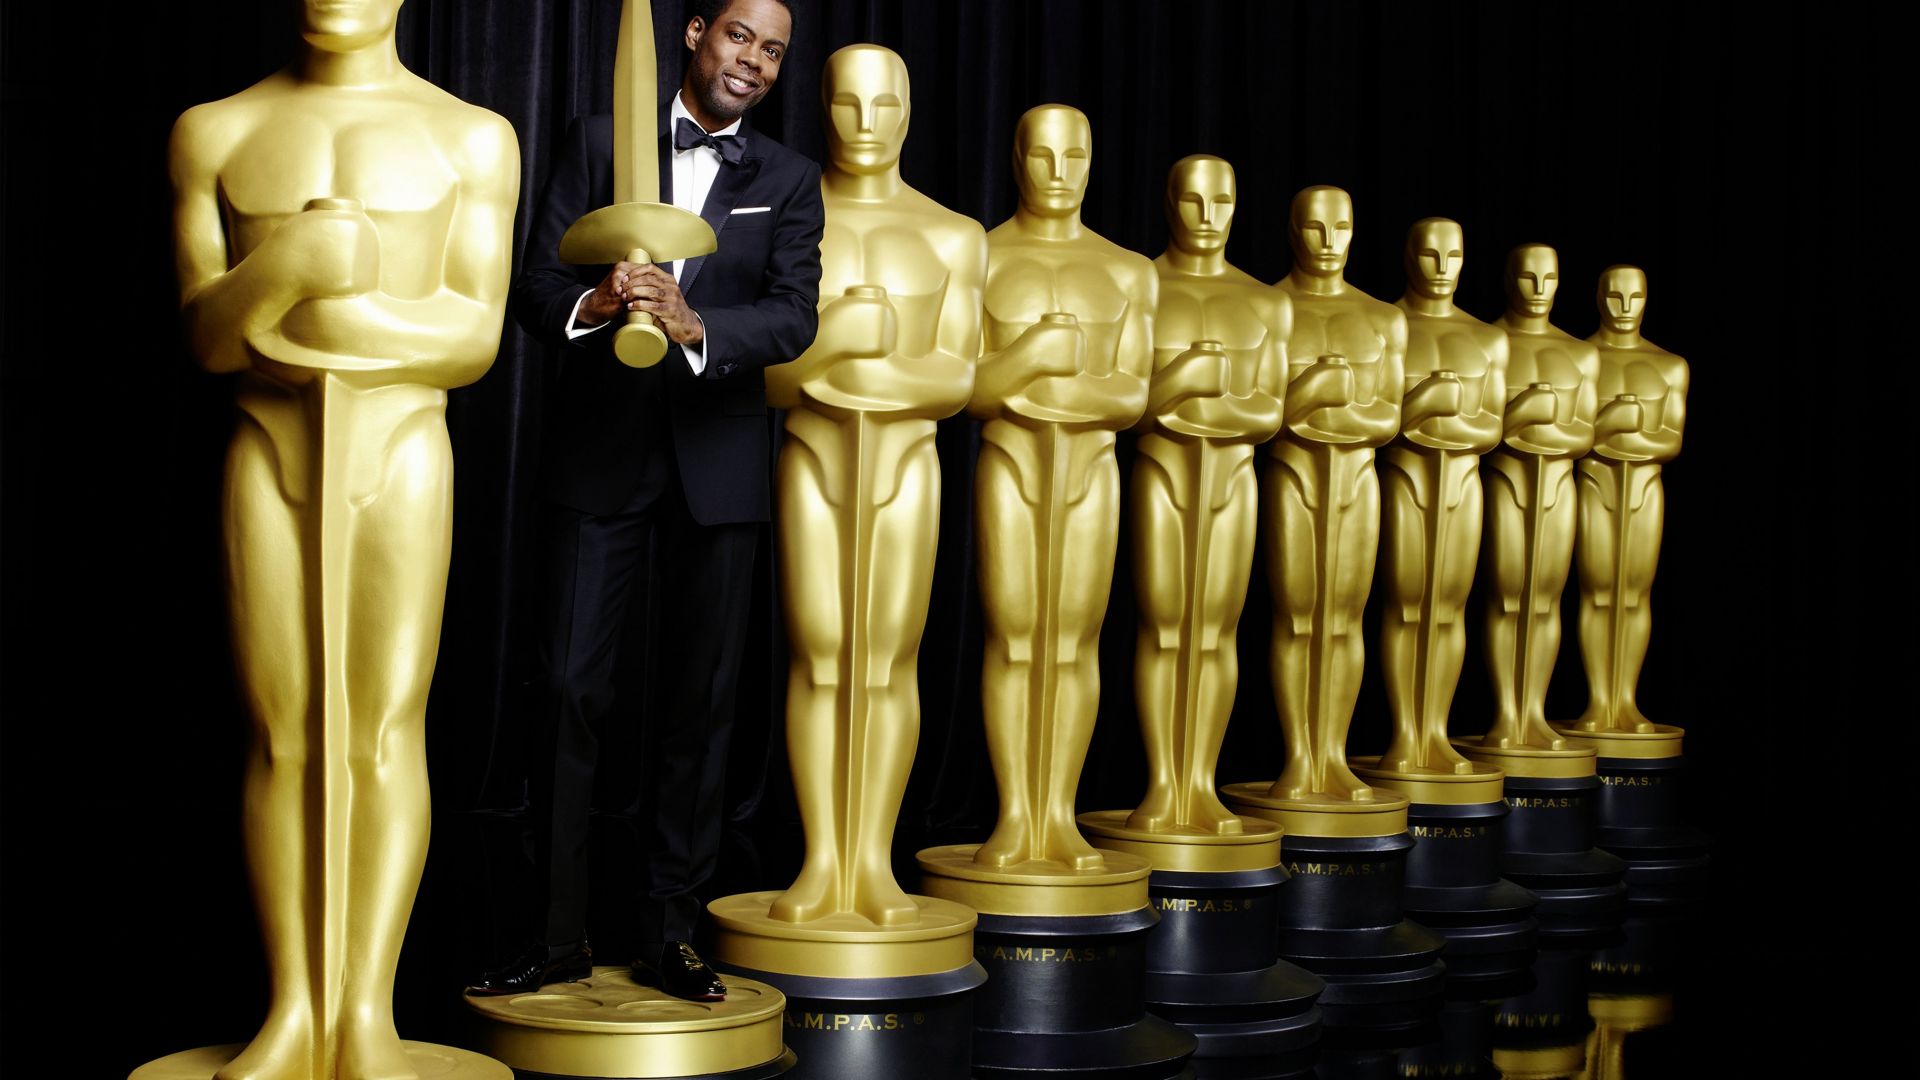 Крис Рок, Оскар 2016, Оскар, Самые популярные знаменитости, актер, Chris Rock, Oscar 2016, Oscar, Most popular celebs, actor (horizontal)